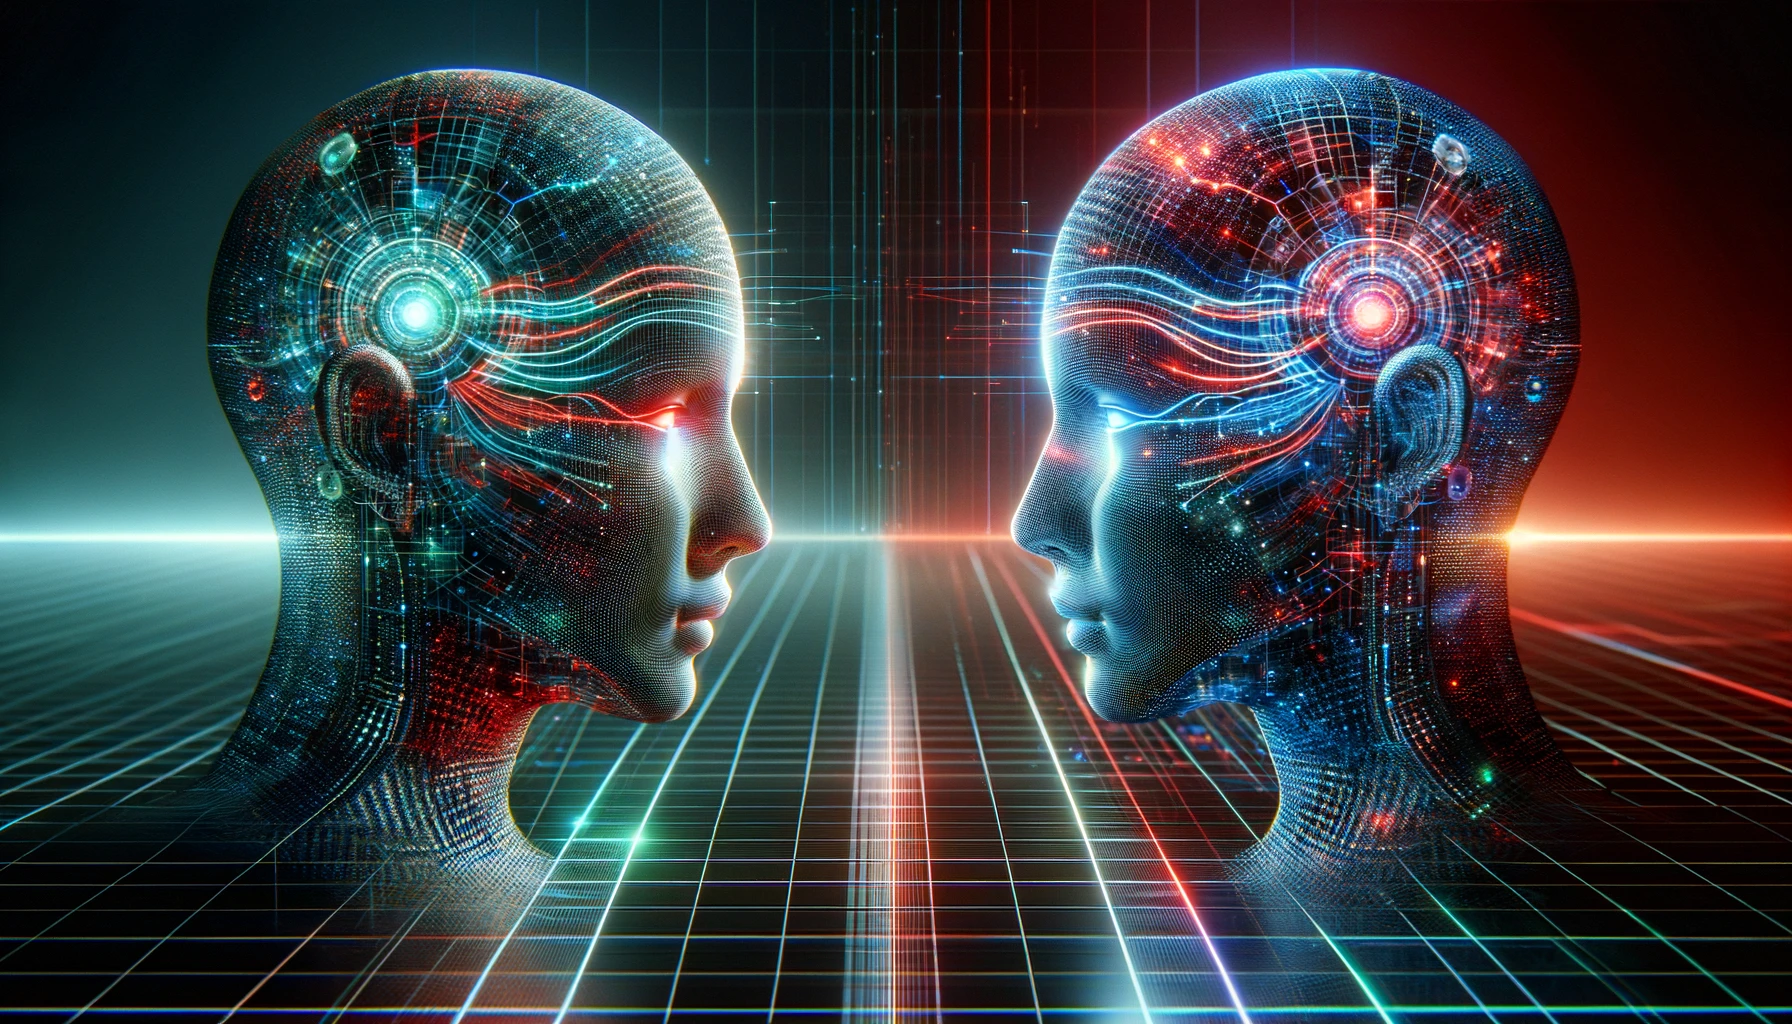 محققان دو مدل هوش مصنوعی را به هم متصل می کنند و آنها را قادر به برقراری ارتباط می کند - خبرخوان تی شین